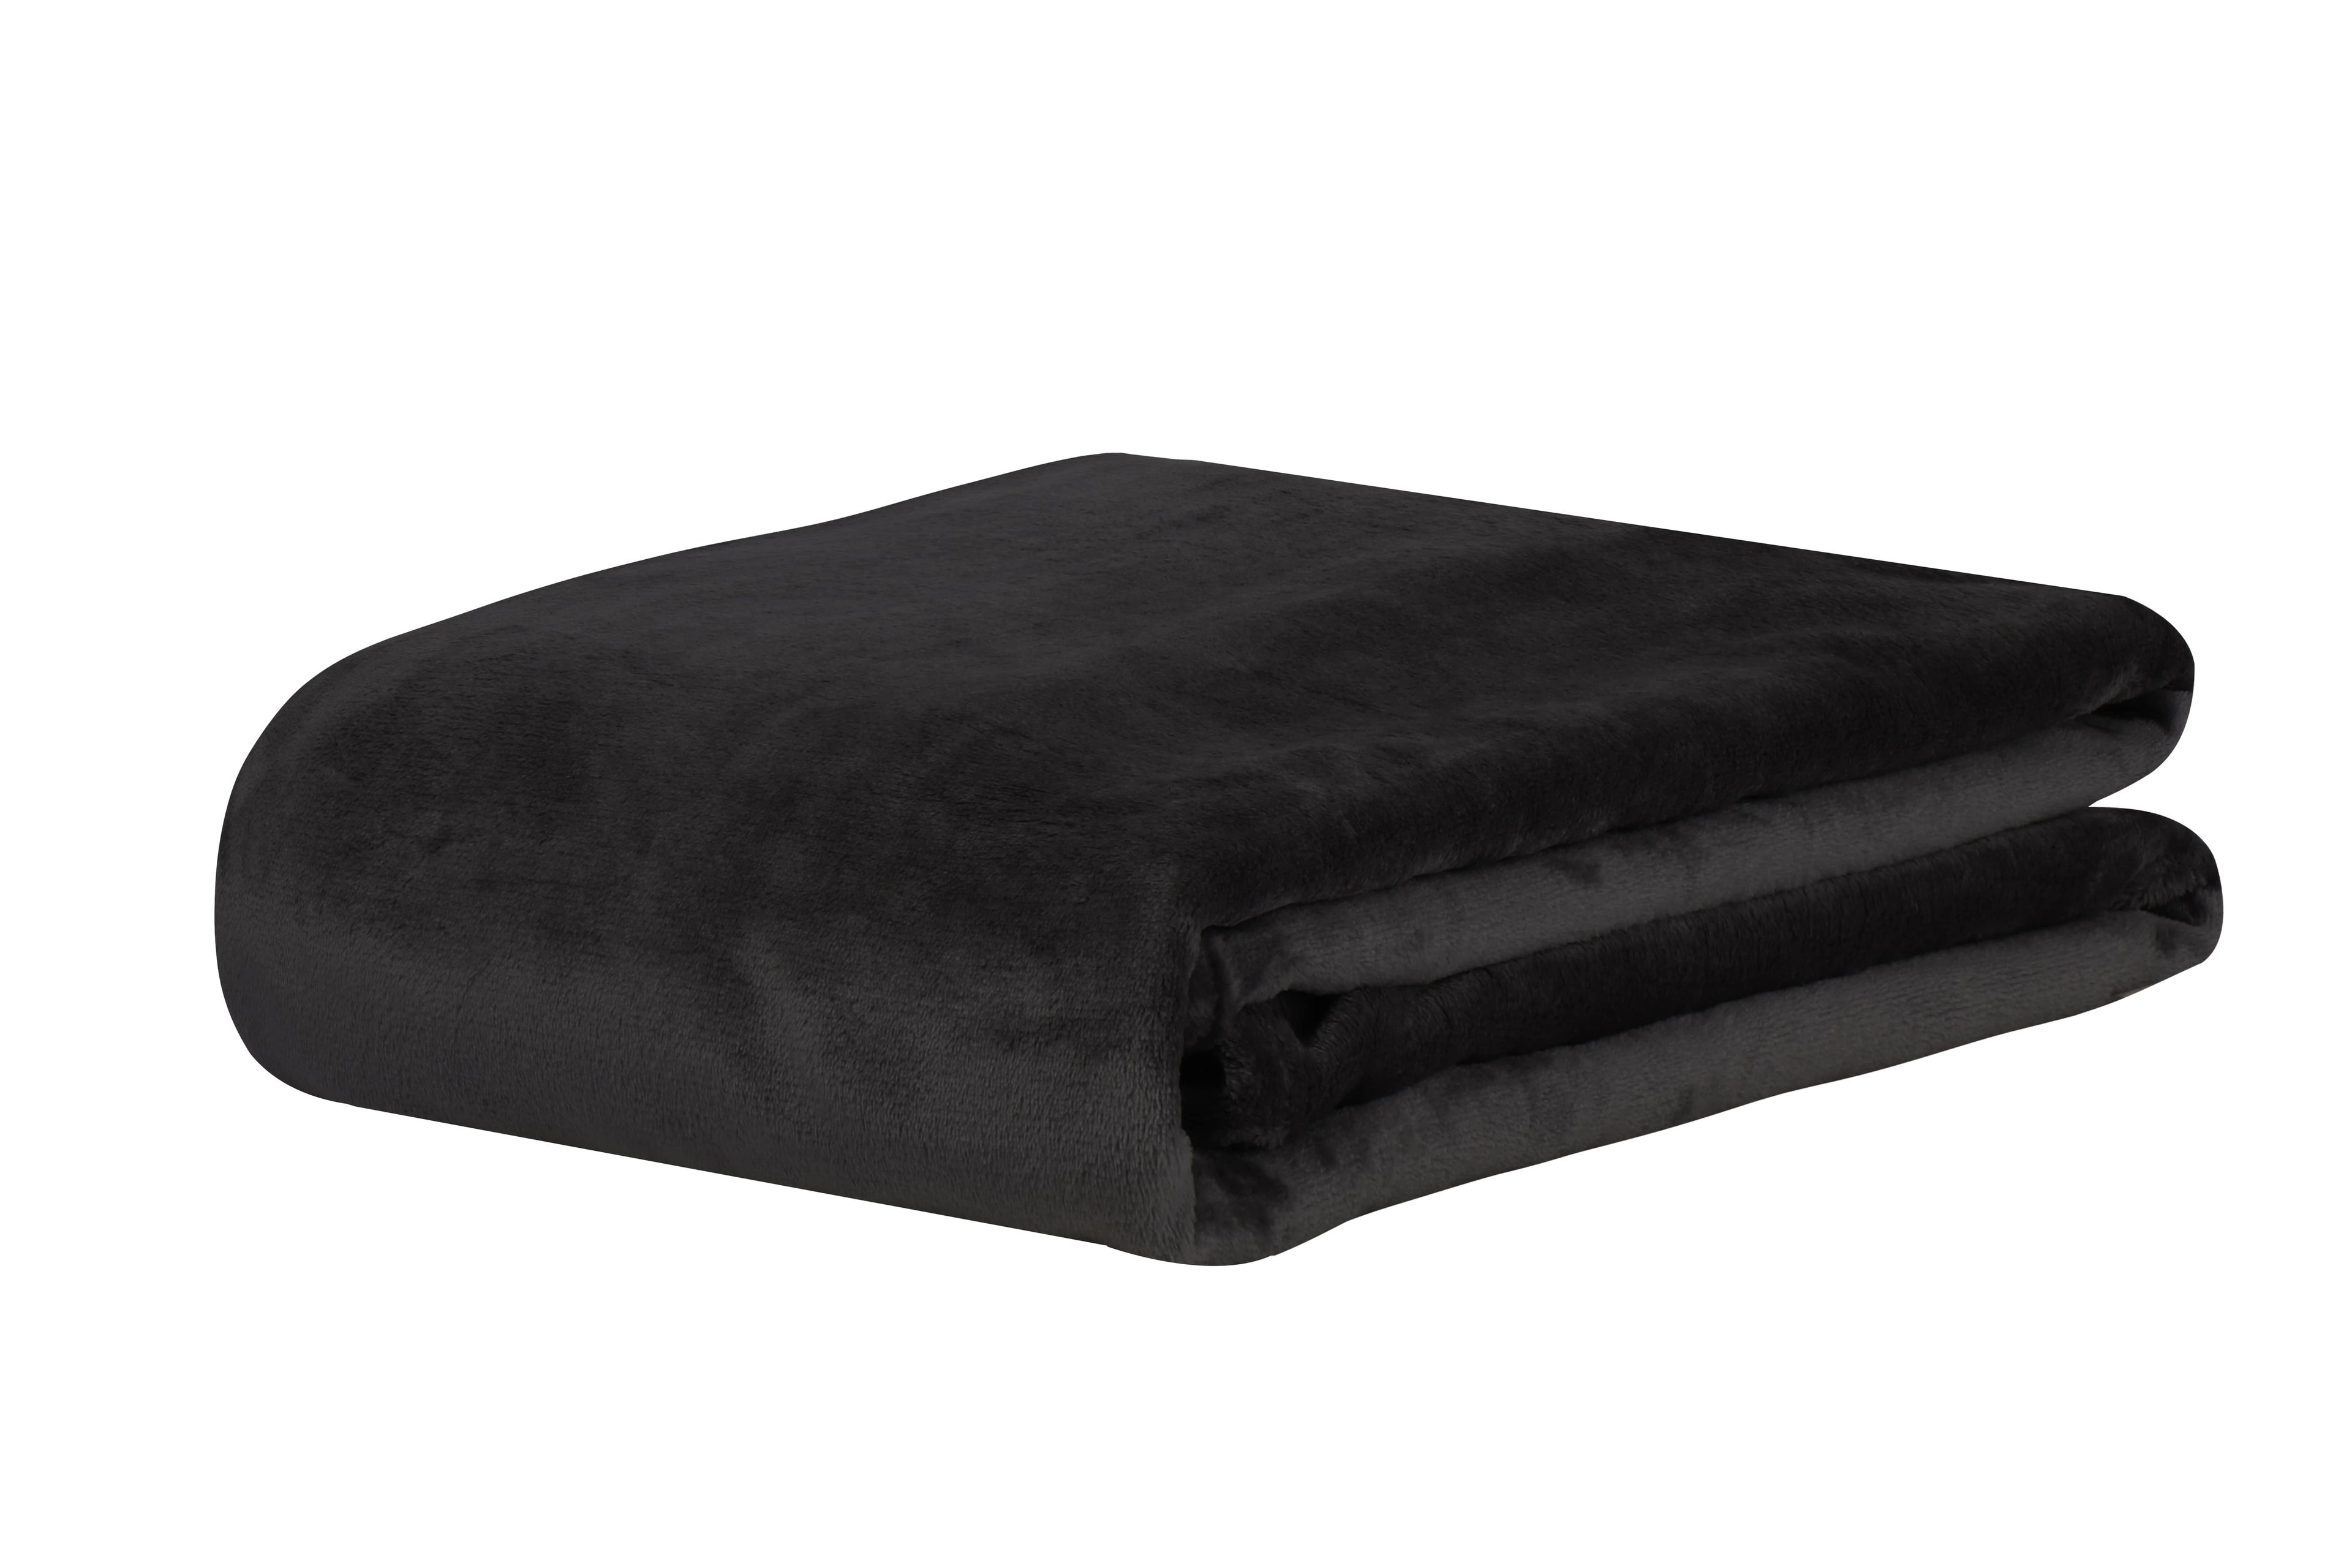 Cobertor Manta Super Soft Casal 2,20x1,80 300G/M² Premium:Preto/Liso - 1